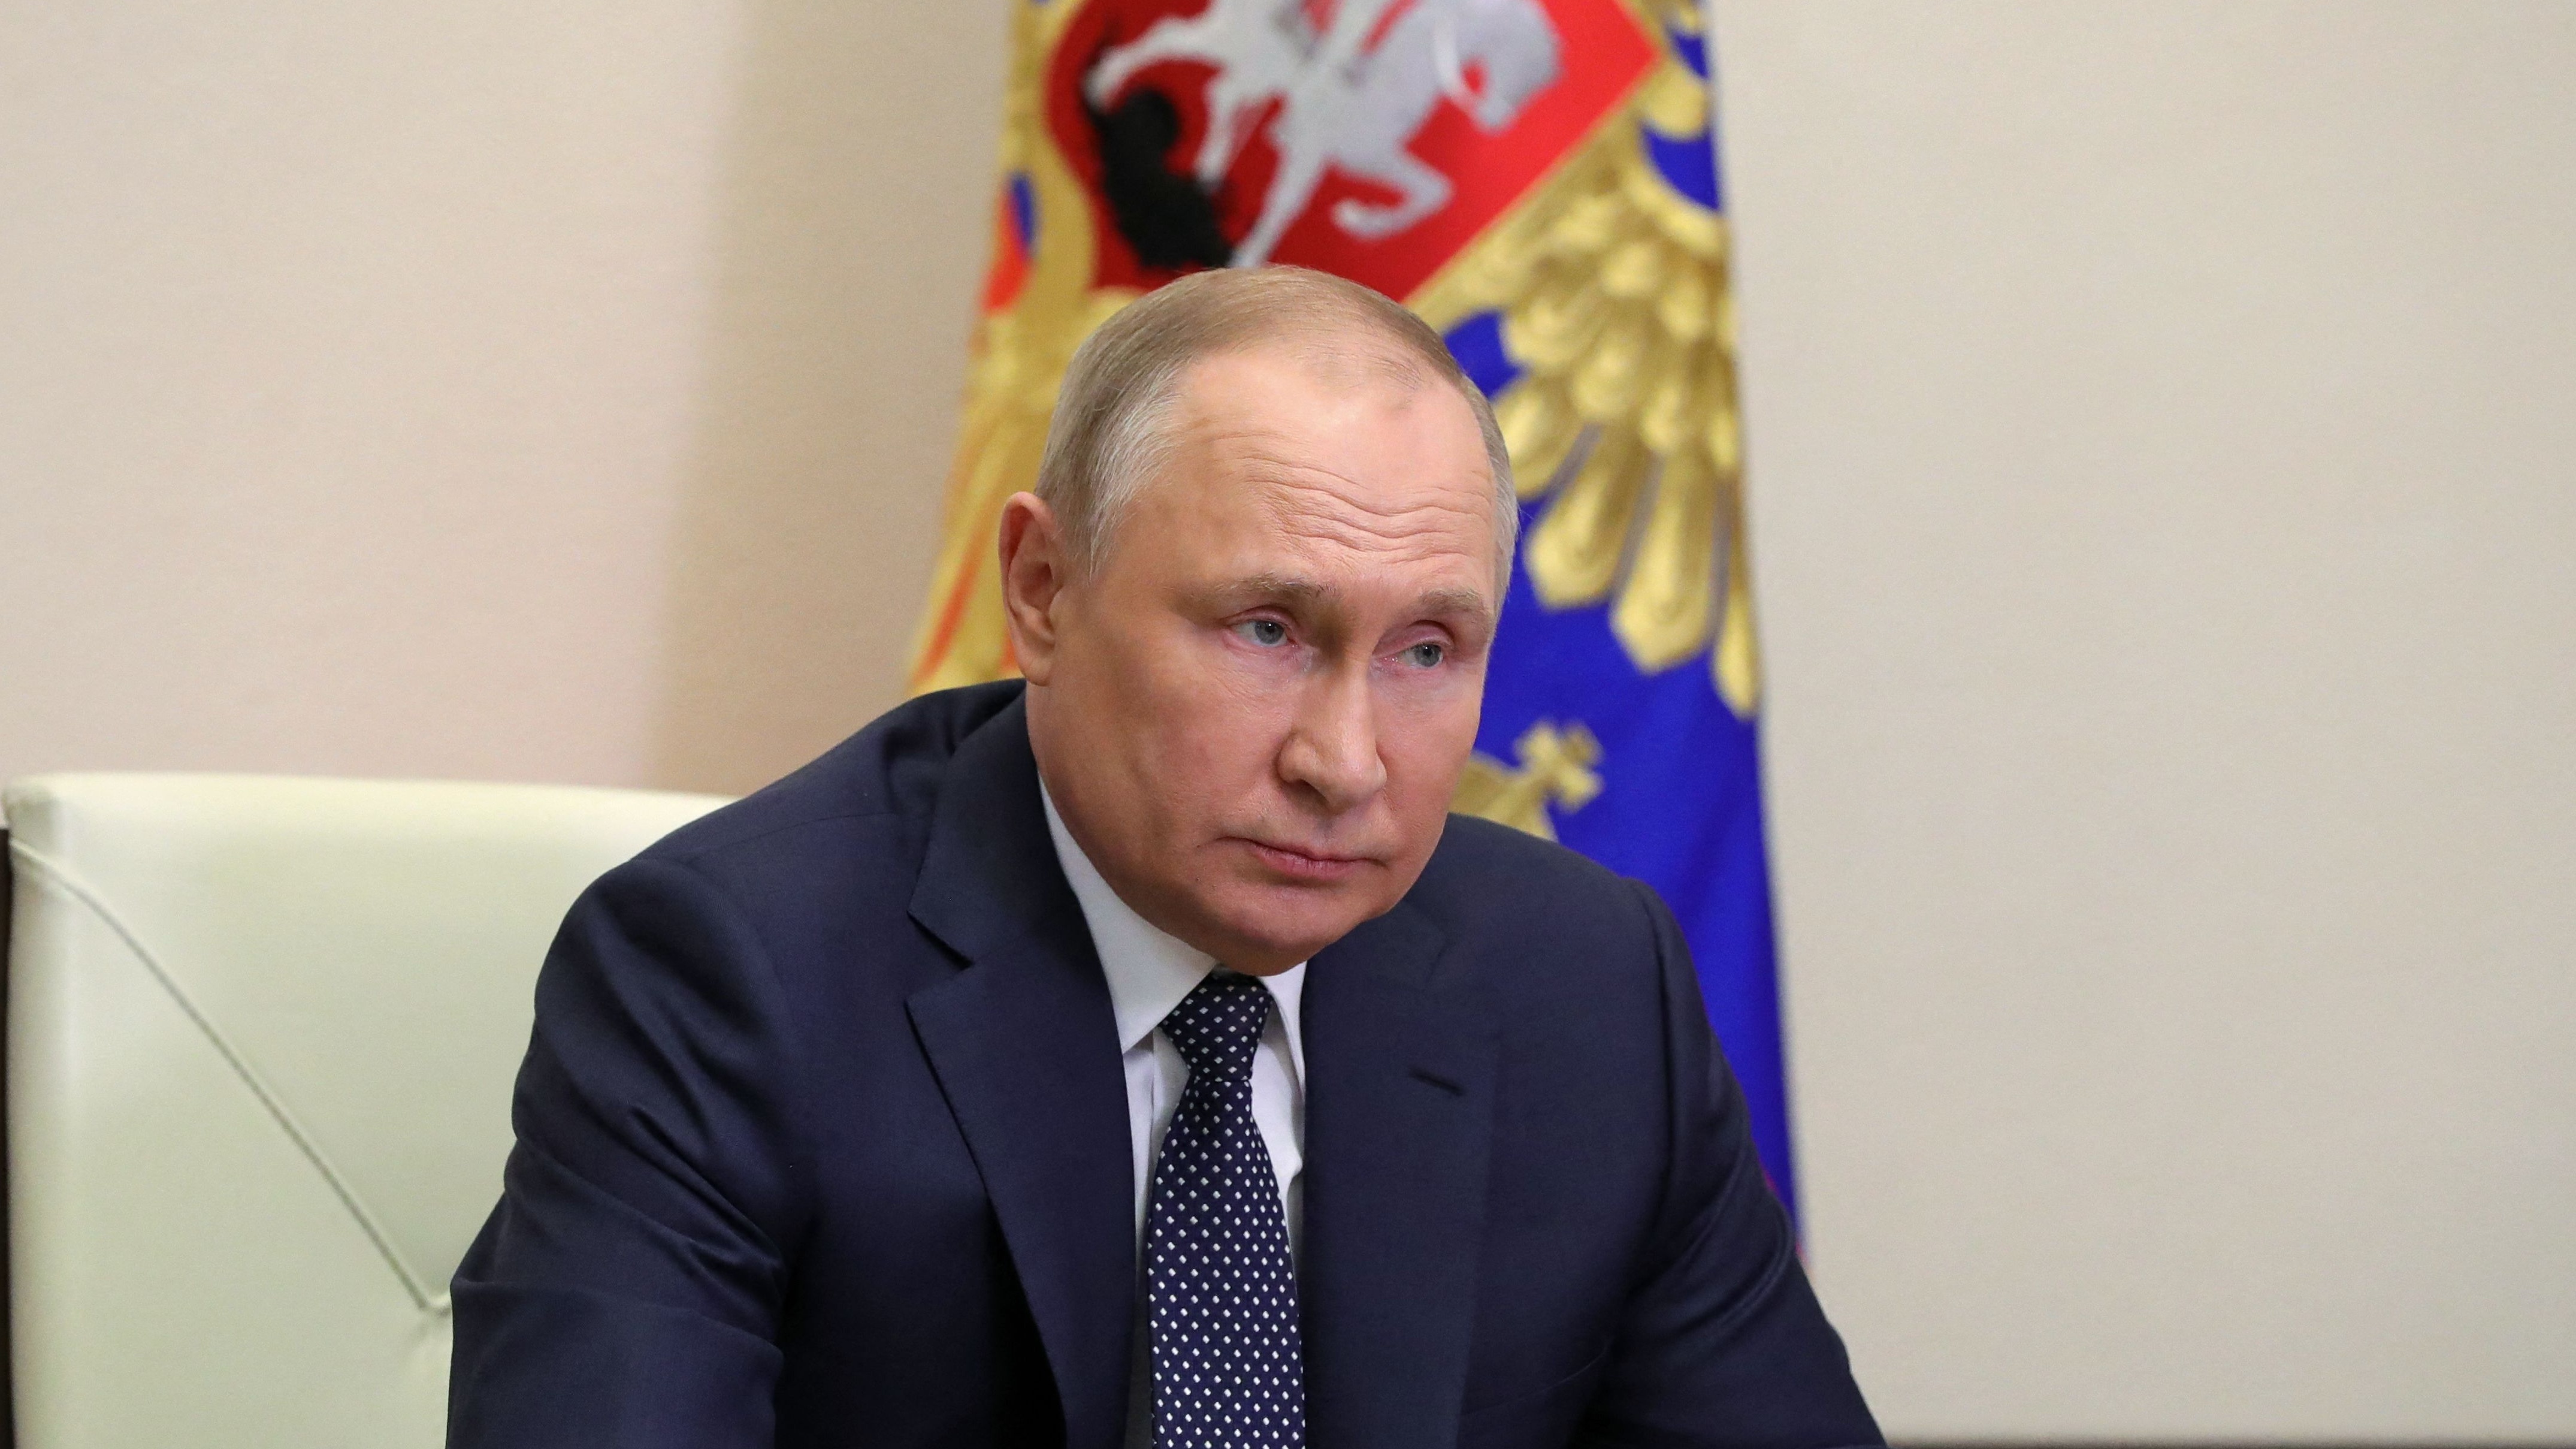 Vladimir Putin during video meetings in the Kremlin